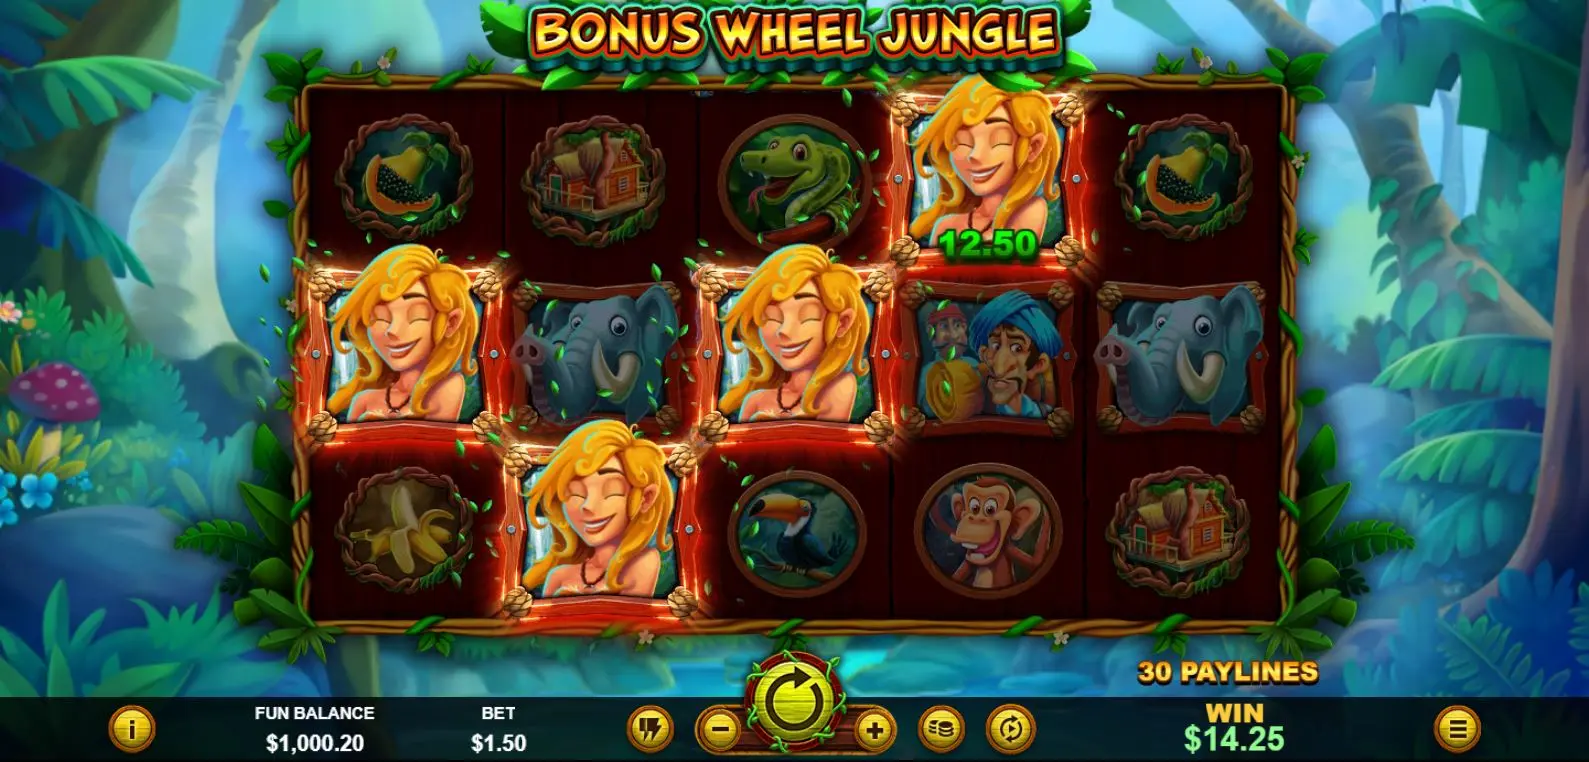 Bonus Wheel Jungle main features